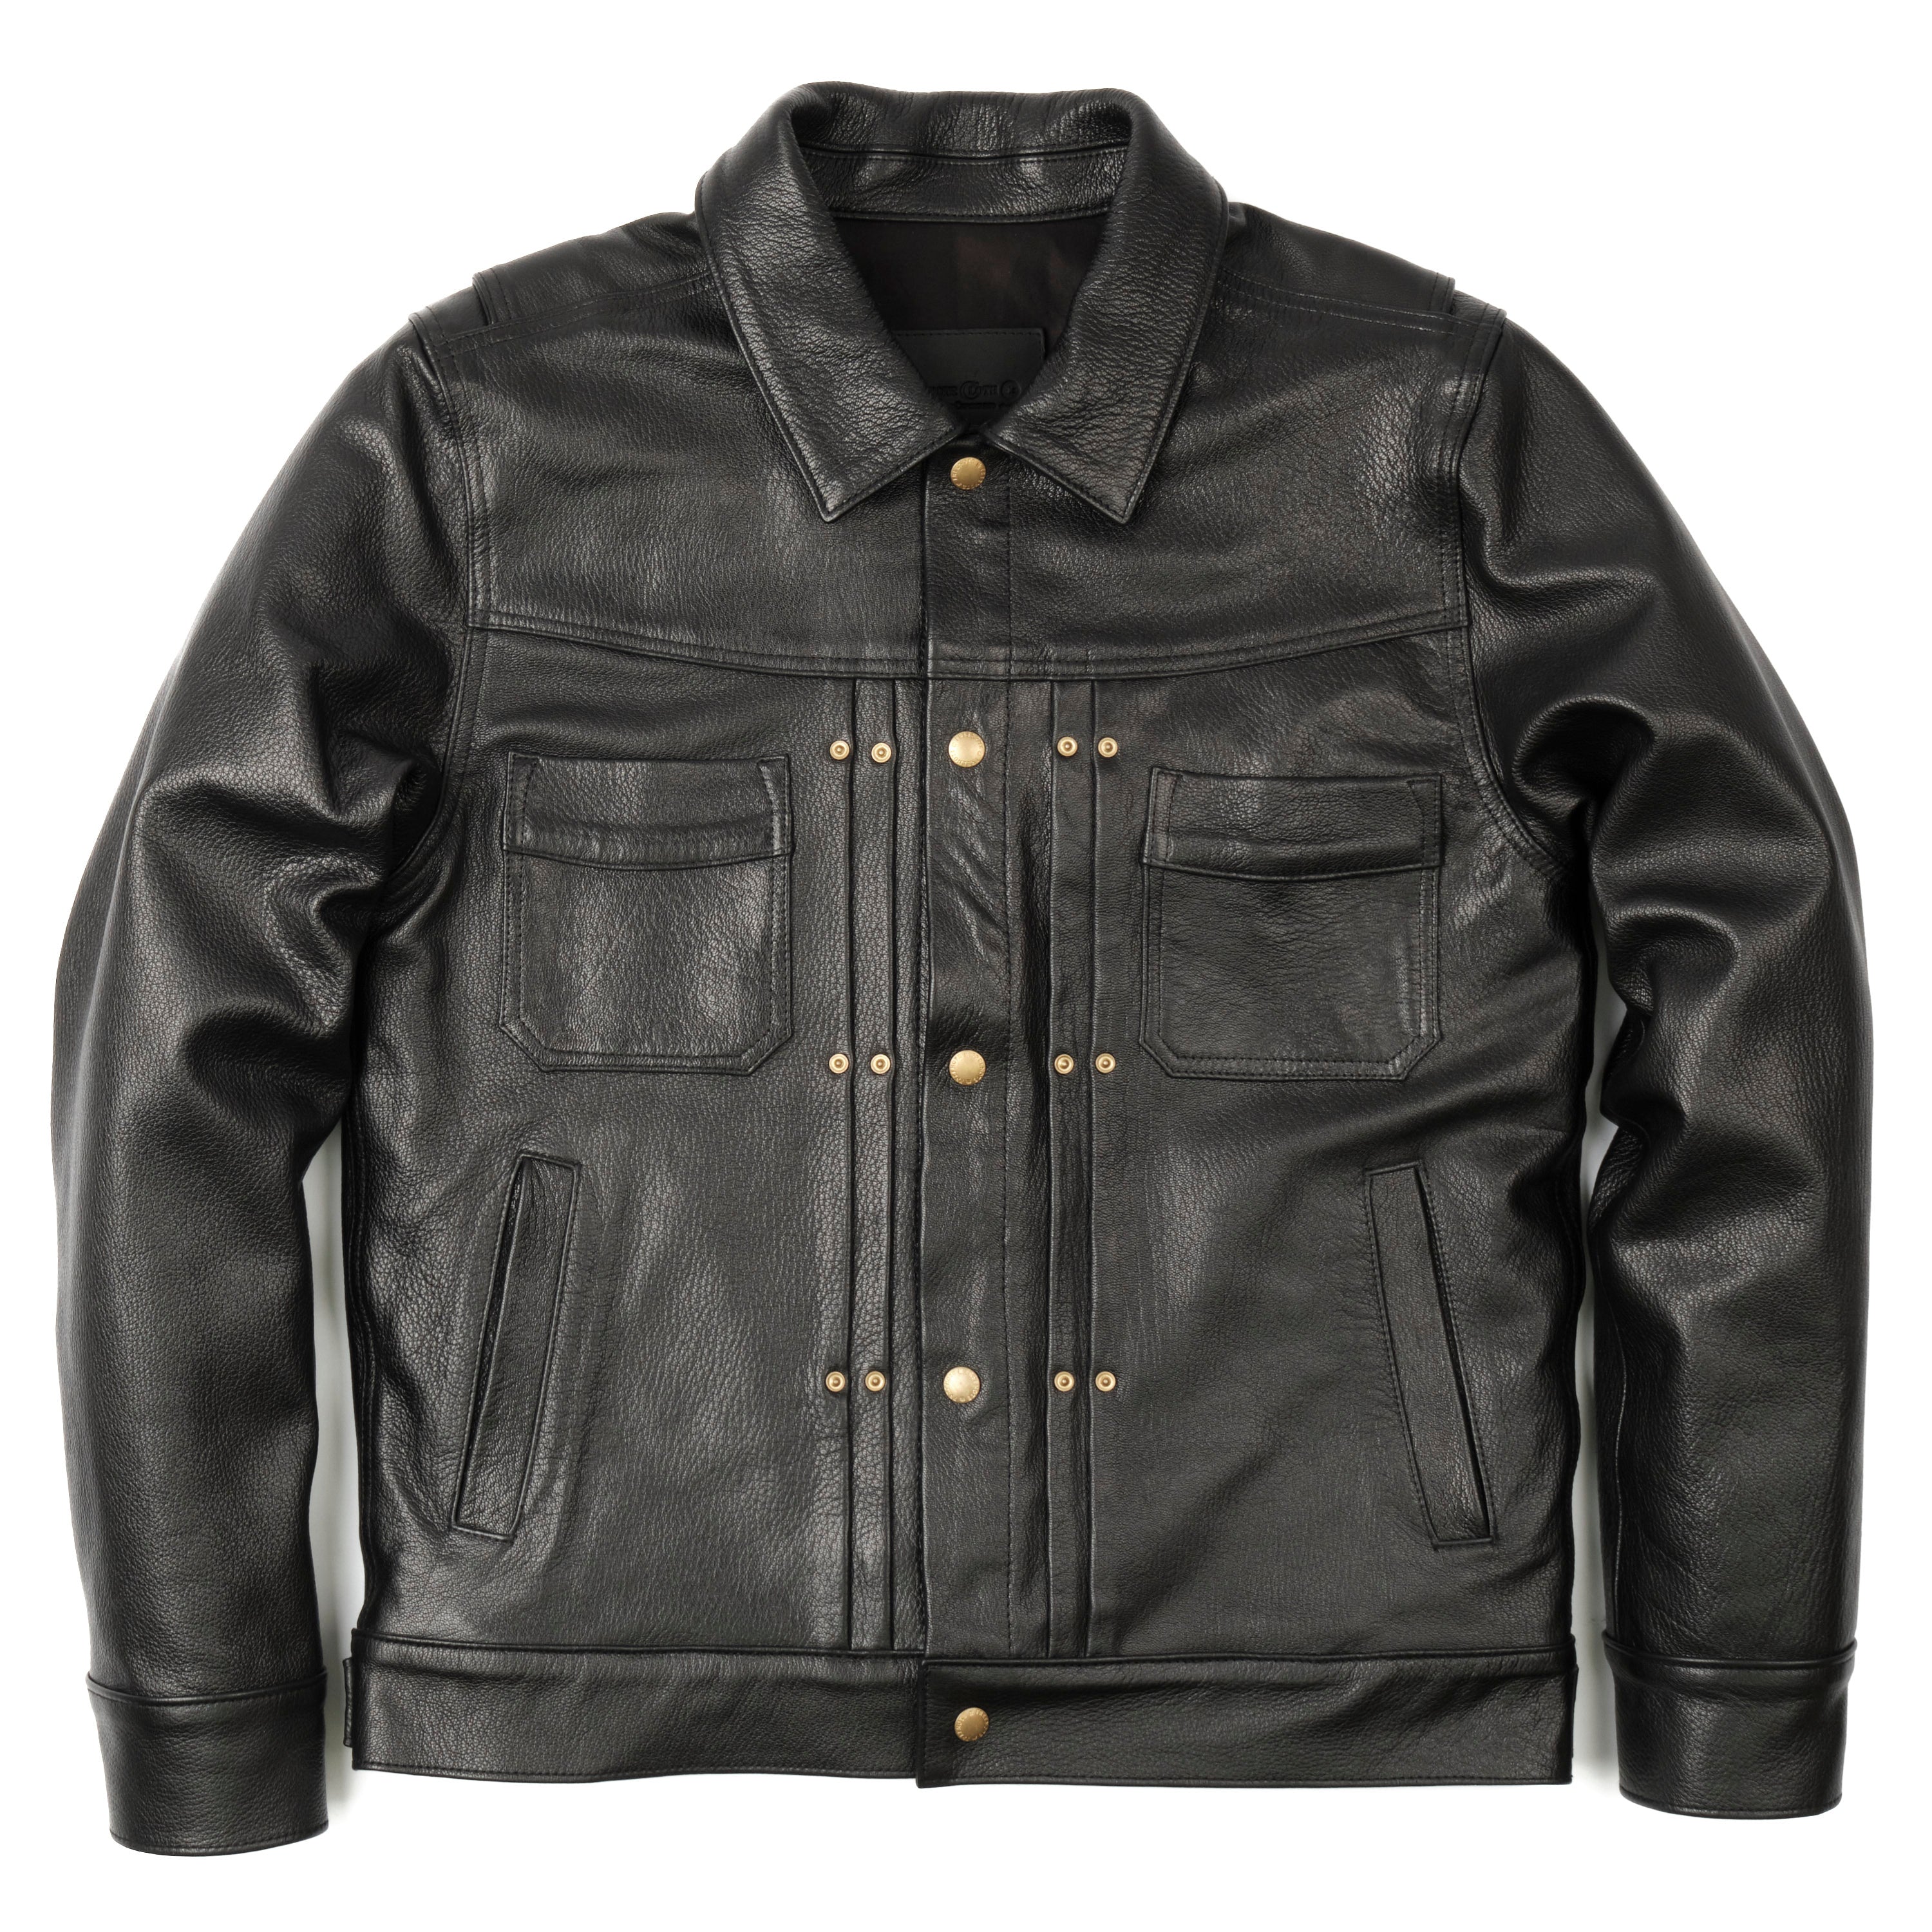 Riders Jacket Black Goatskin Leather